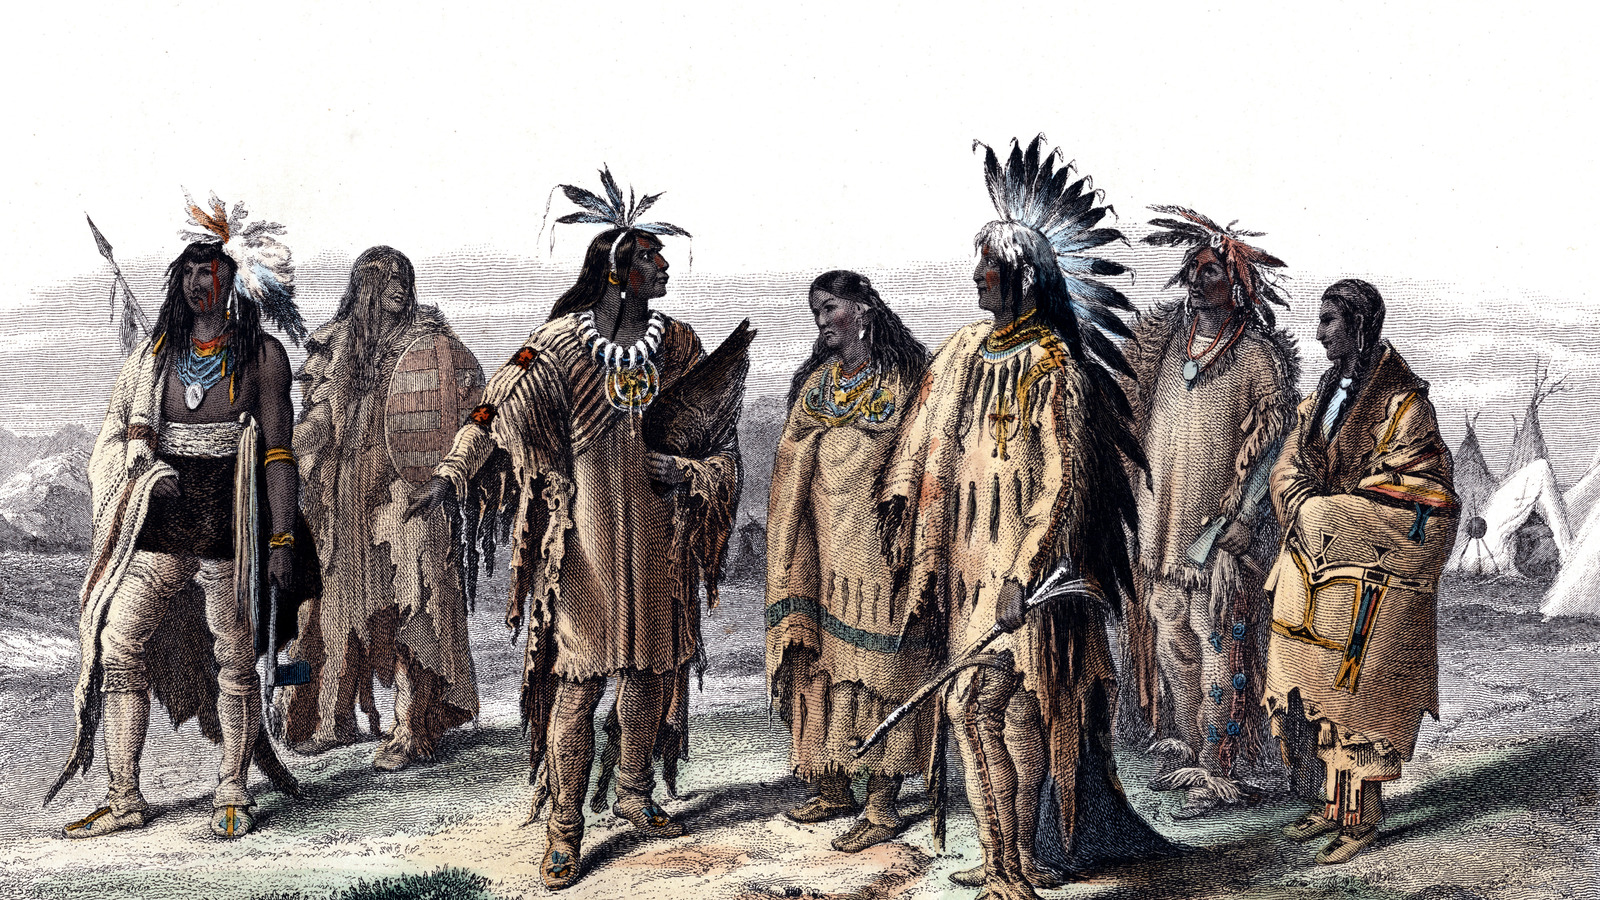 Могучее племя. Американские индейцы вожди индейцев Северной Америки. Коренные индейцы Северной Америки. Коренные жители Америки индейцы. Коренные жители Южной Америки индейцы.